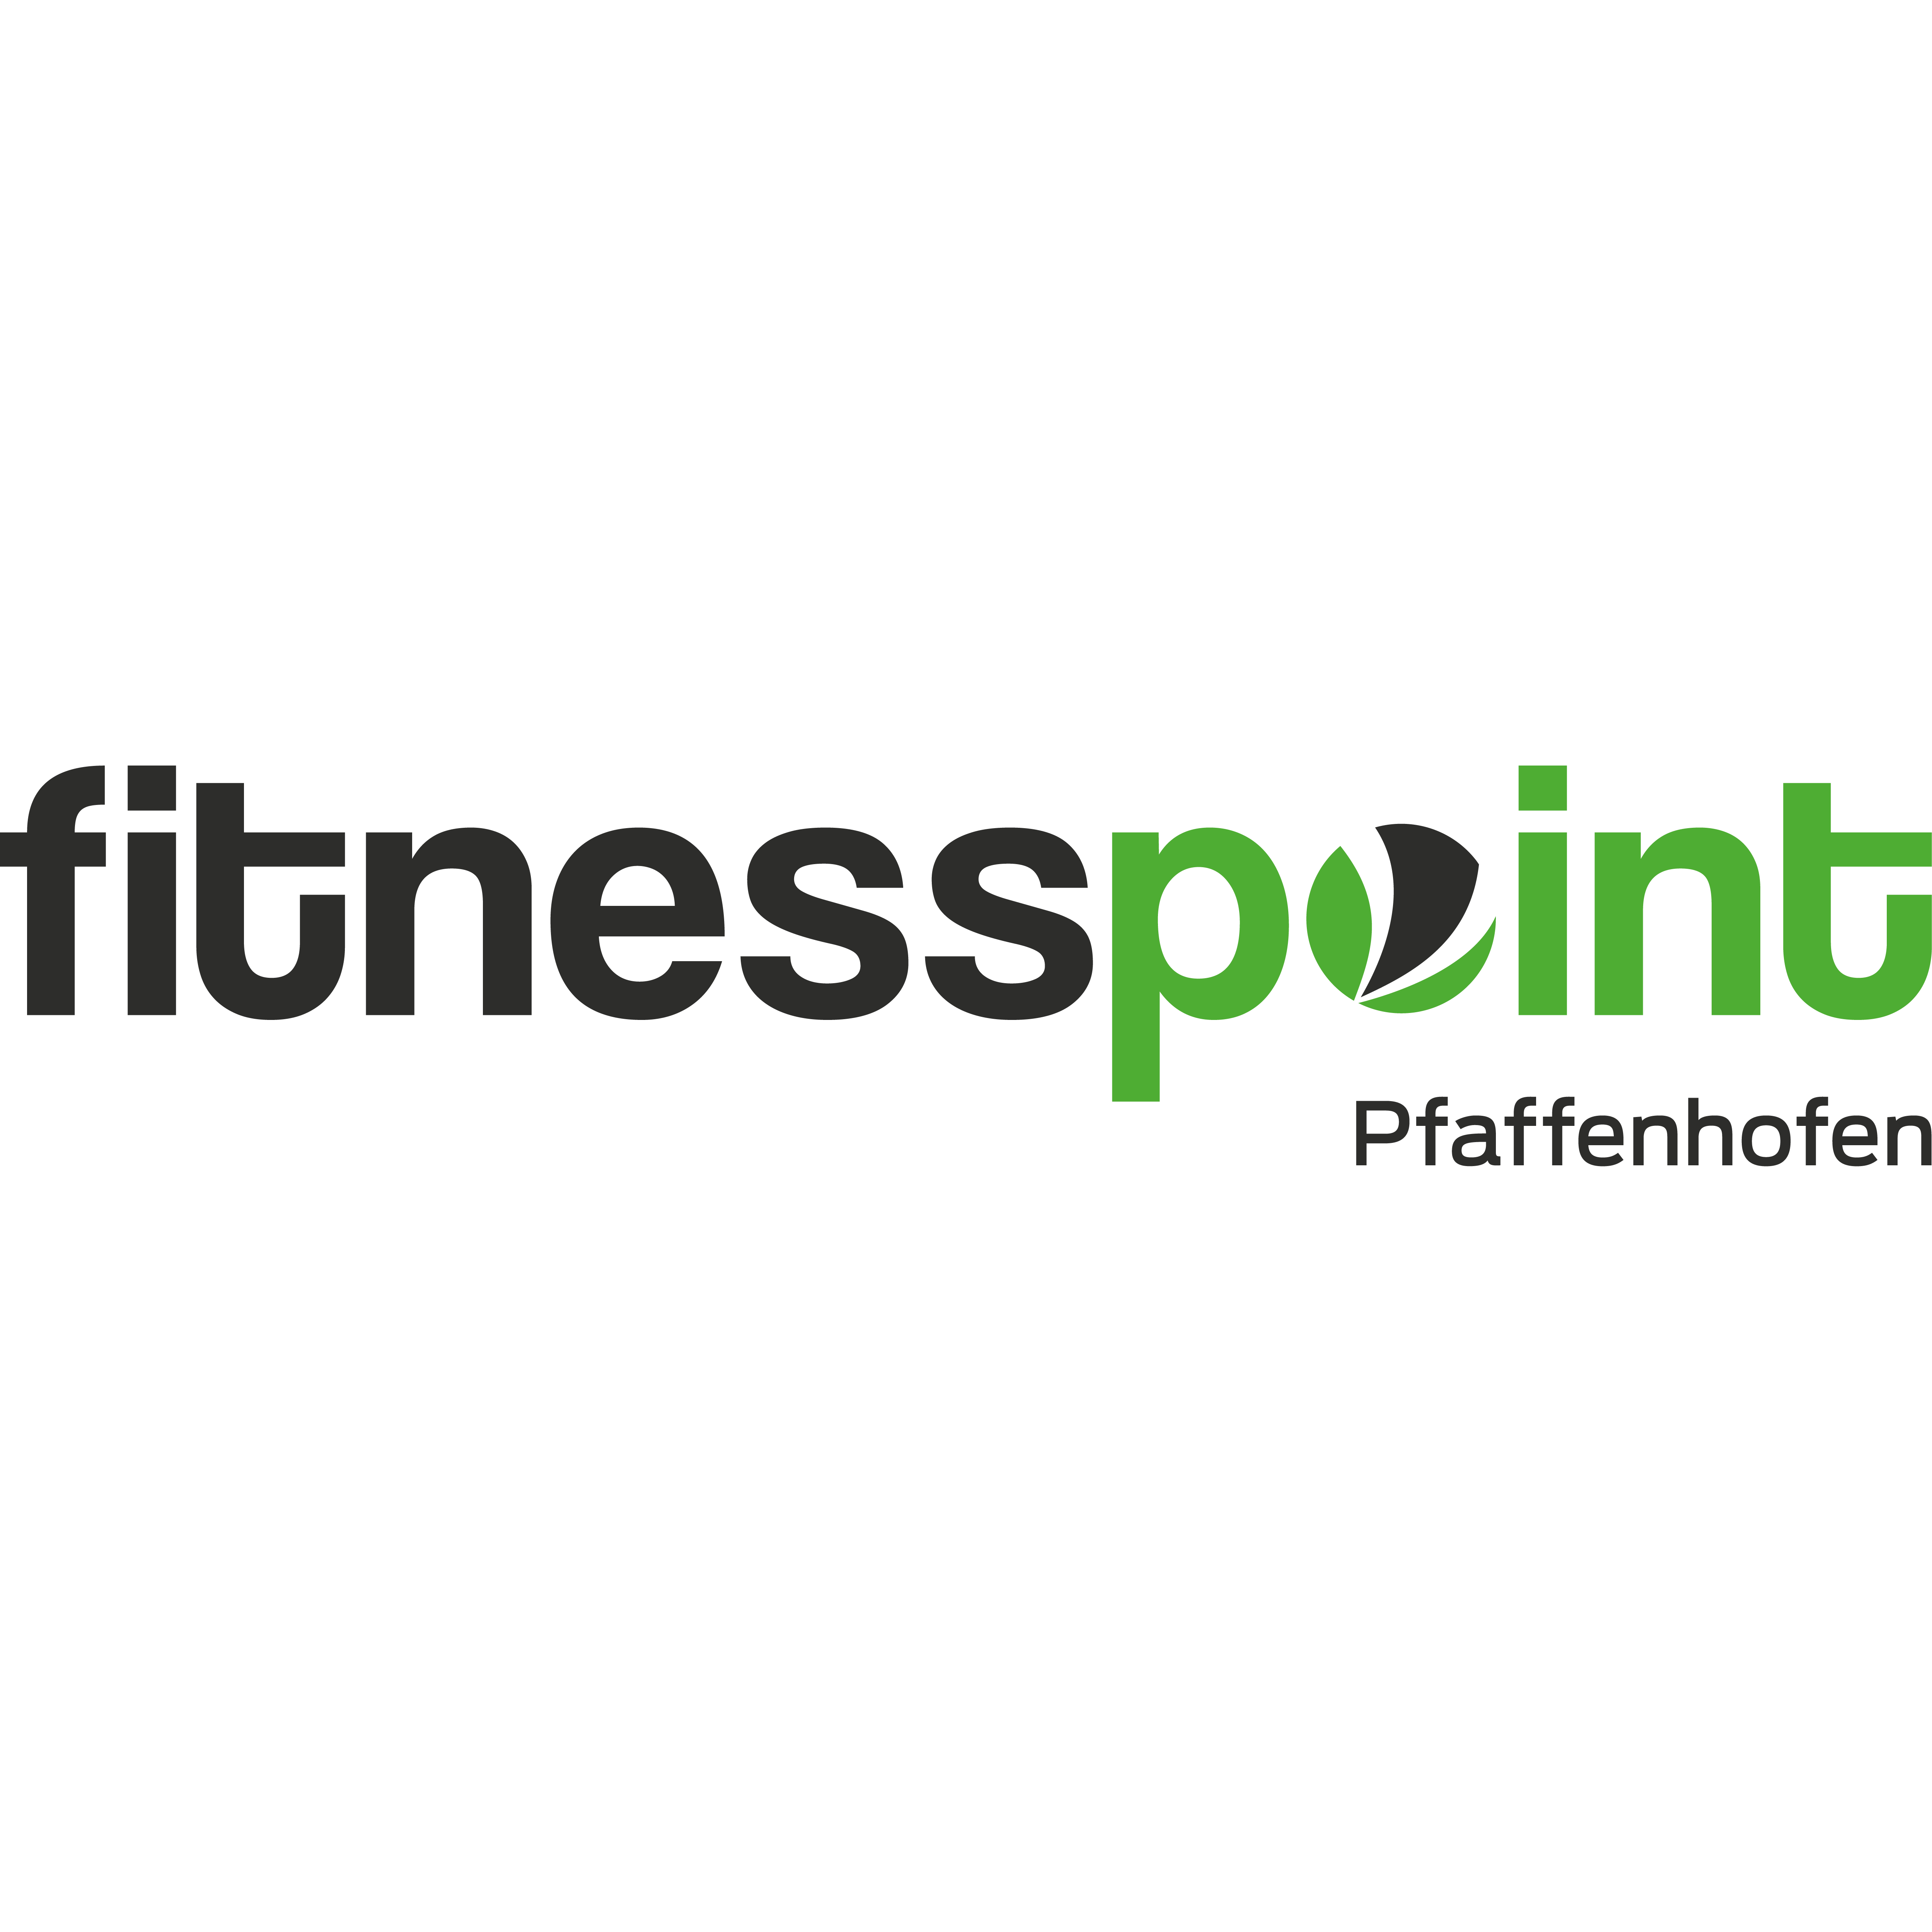 Fitnesspoint Pfaffenhofen in Reisgang Gemeinde Hettenshausen - Logo